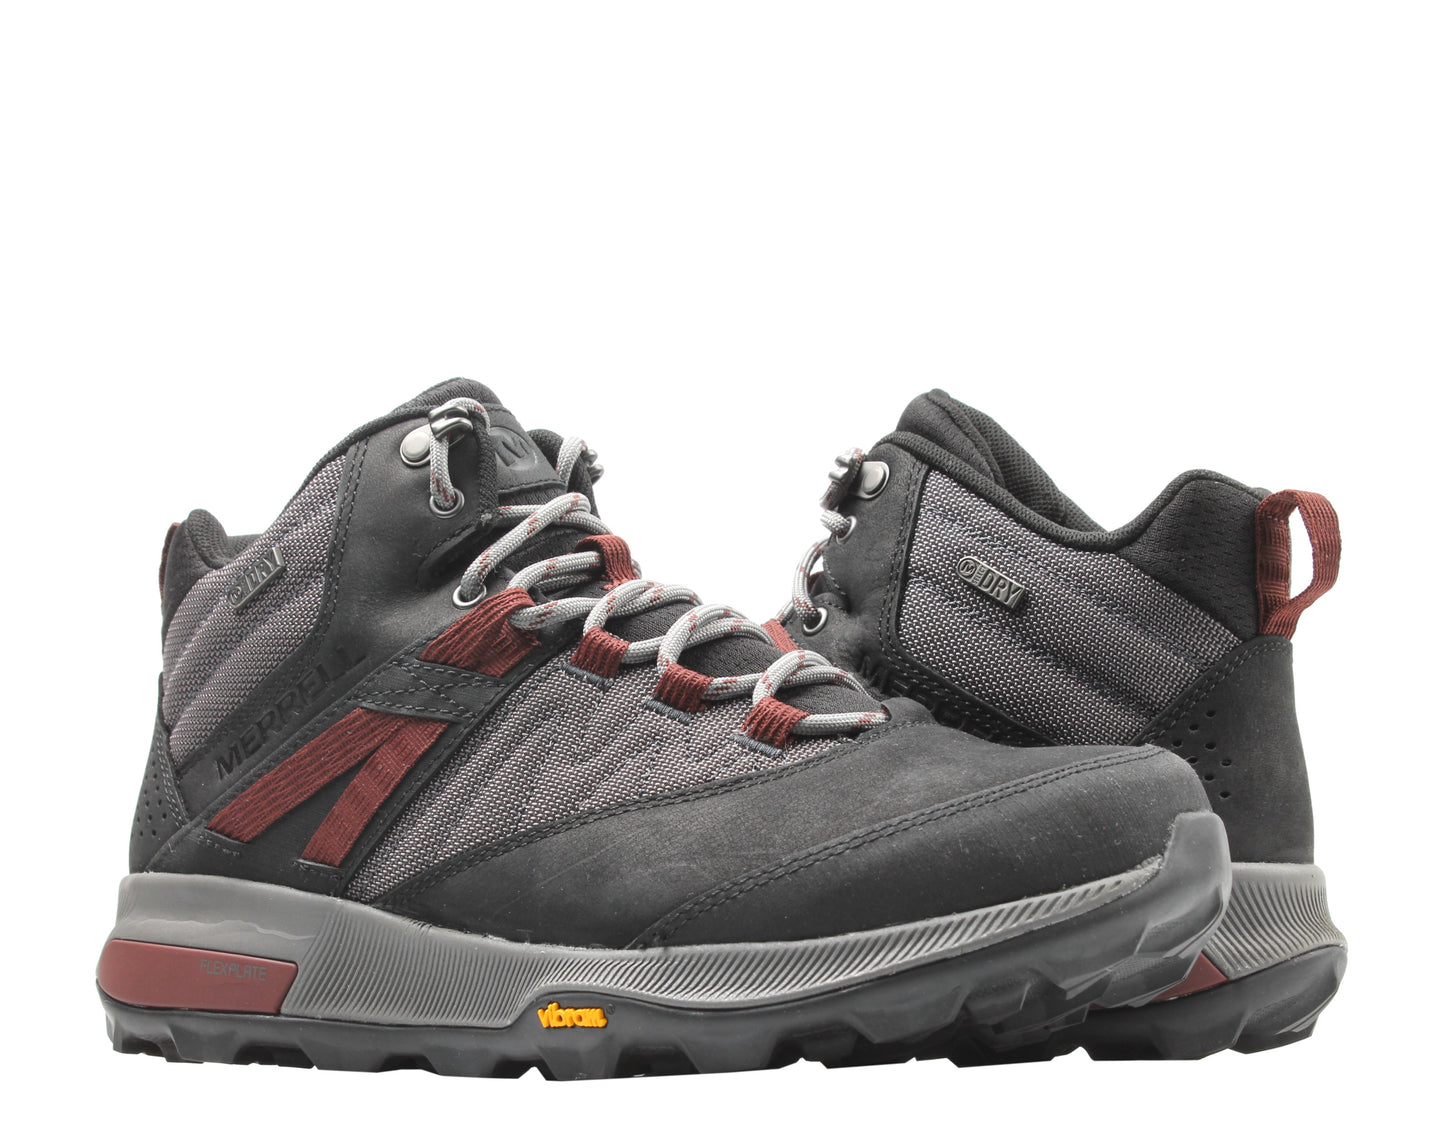 Merrell Zion Mid Waterproof Men's Hiking Boots